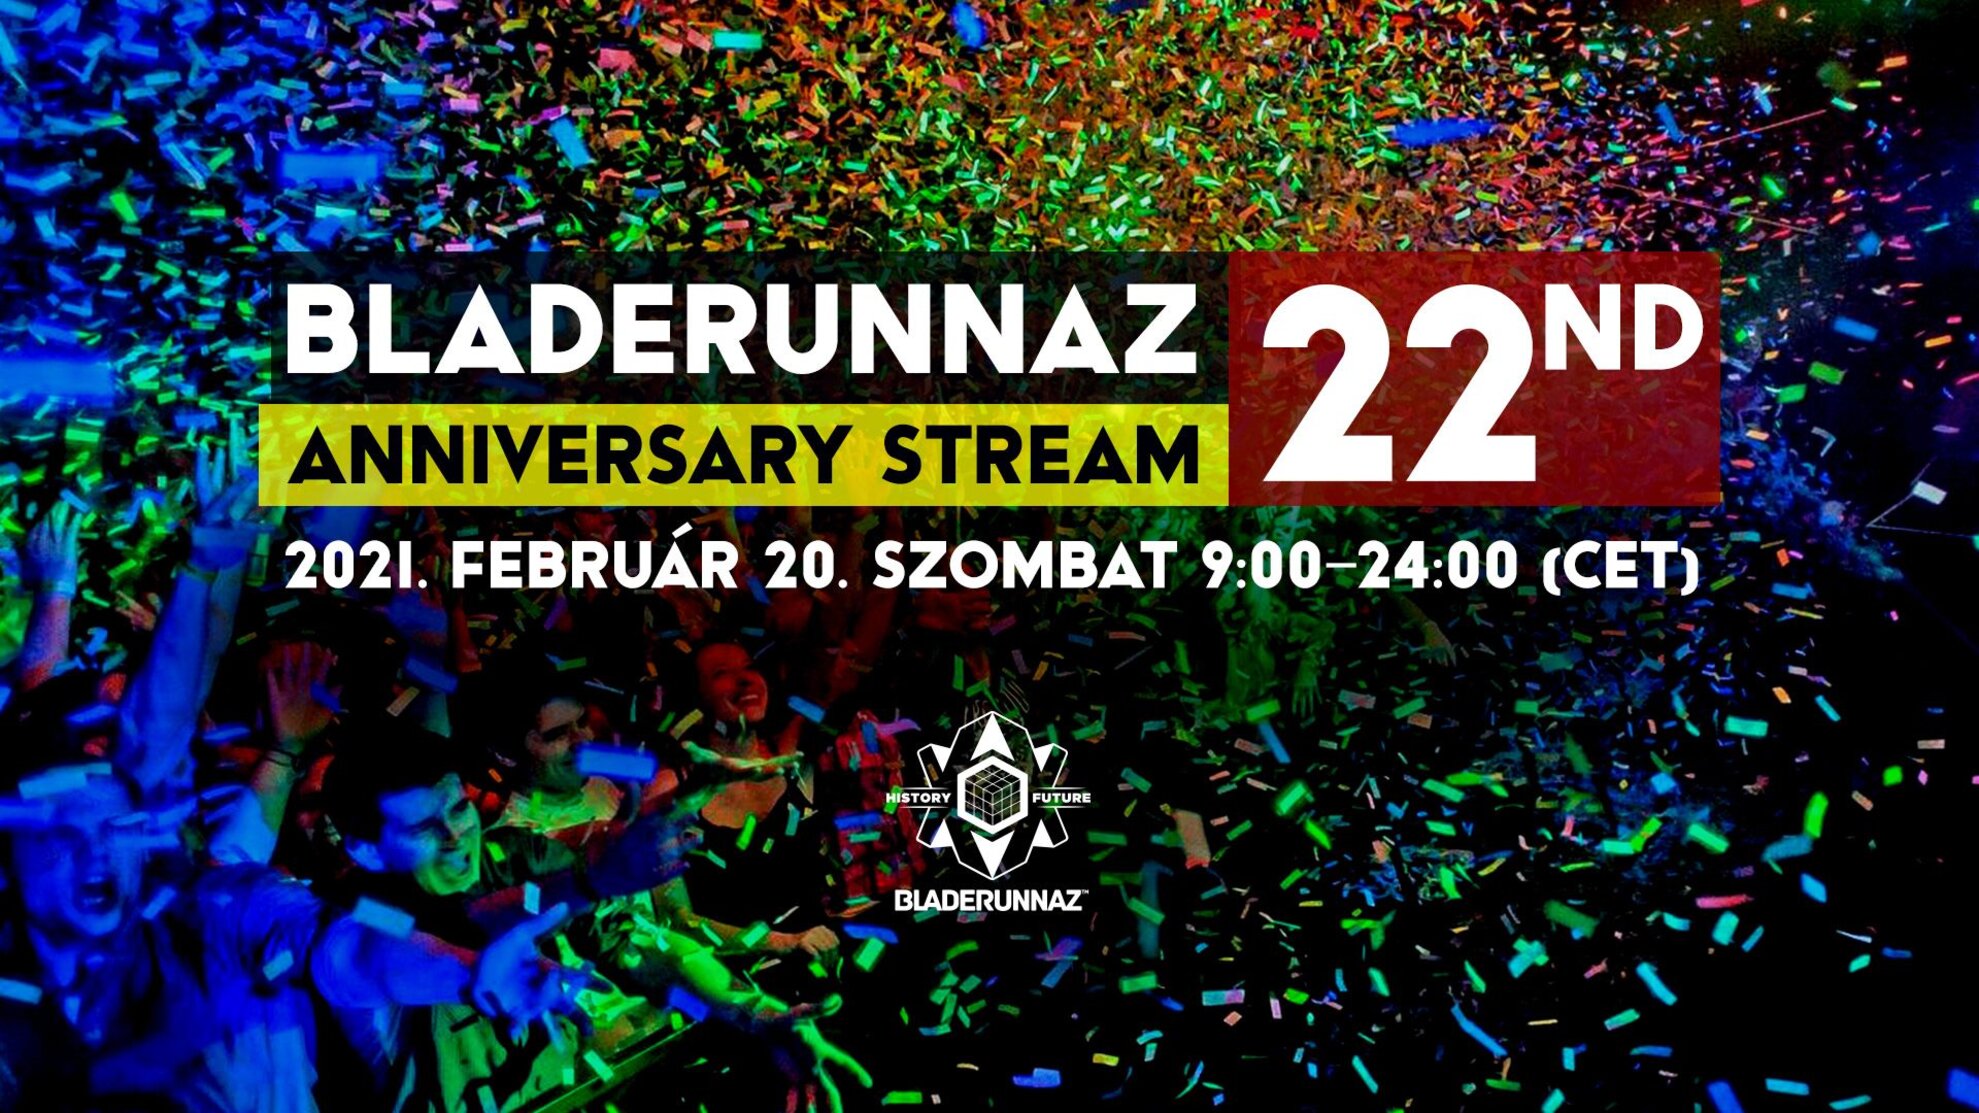 Bladerunnaz 22nd Anniversary Stream